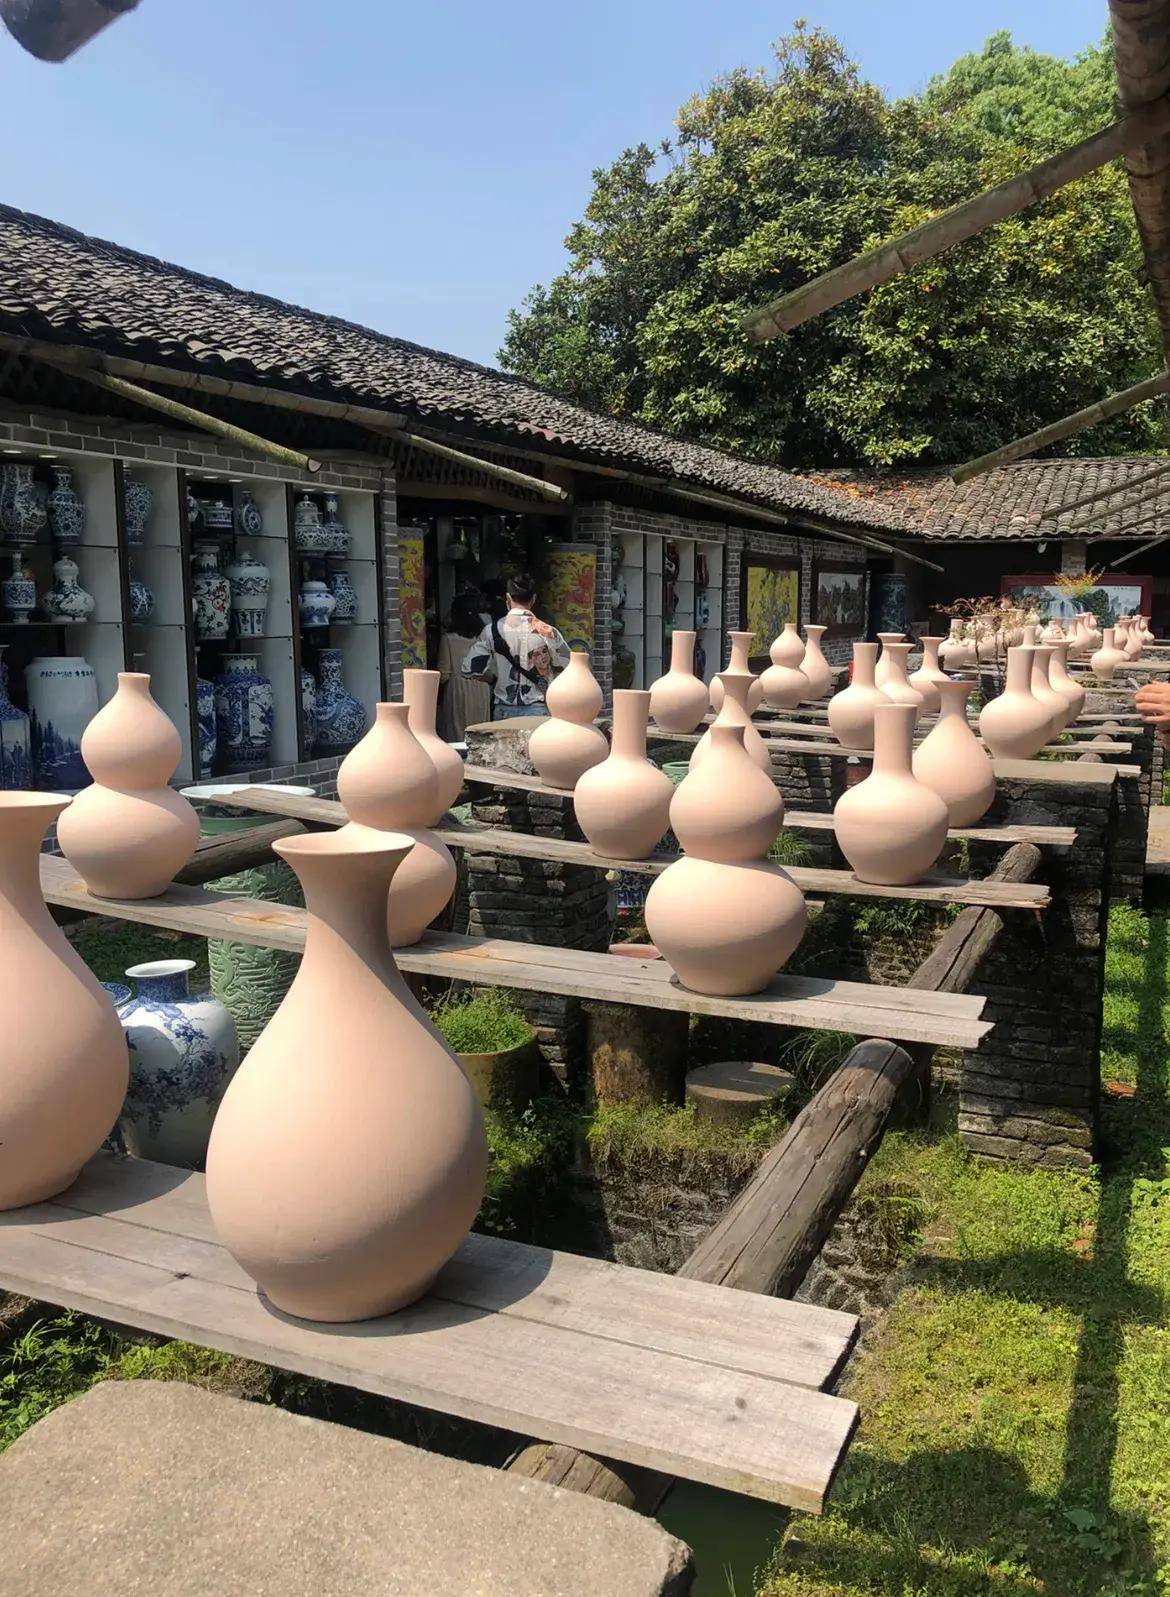 陶瓷博物馆